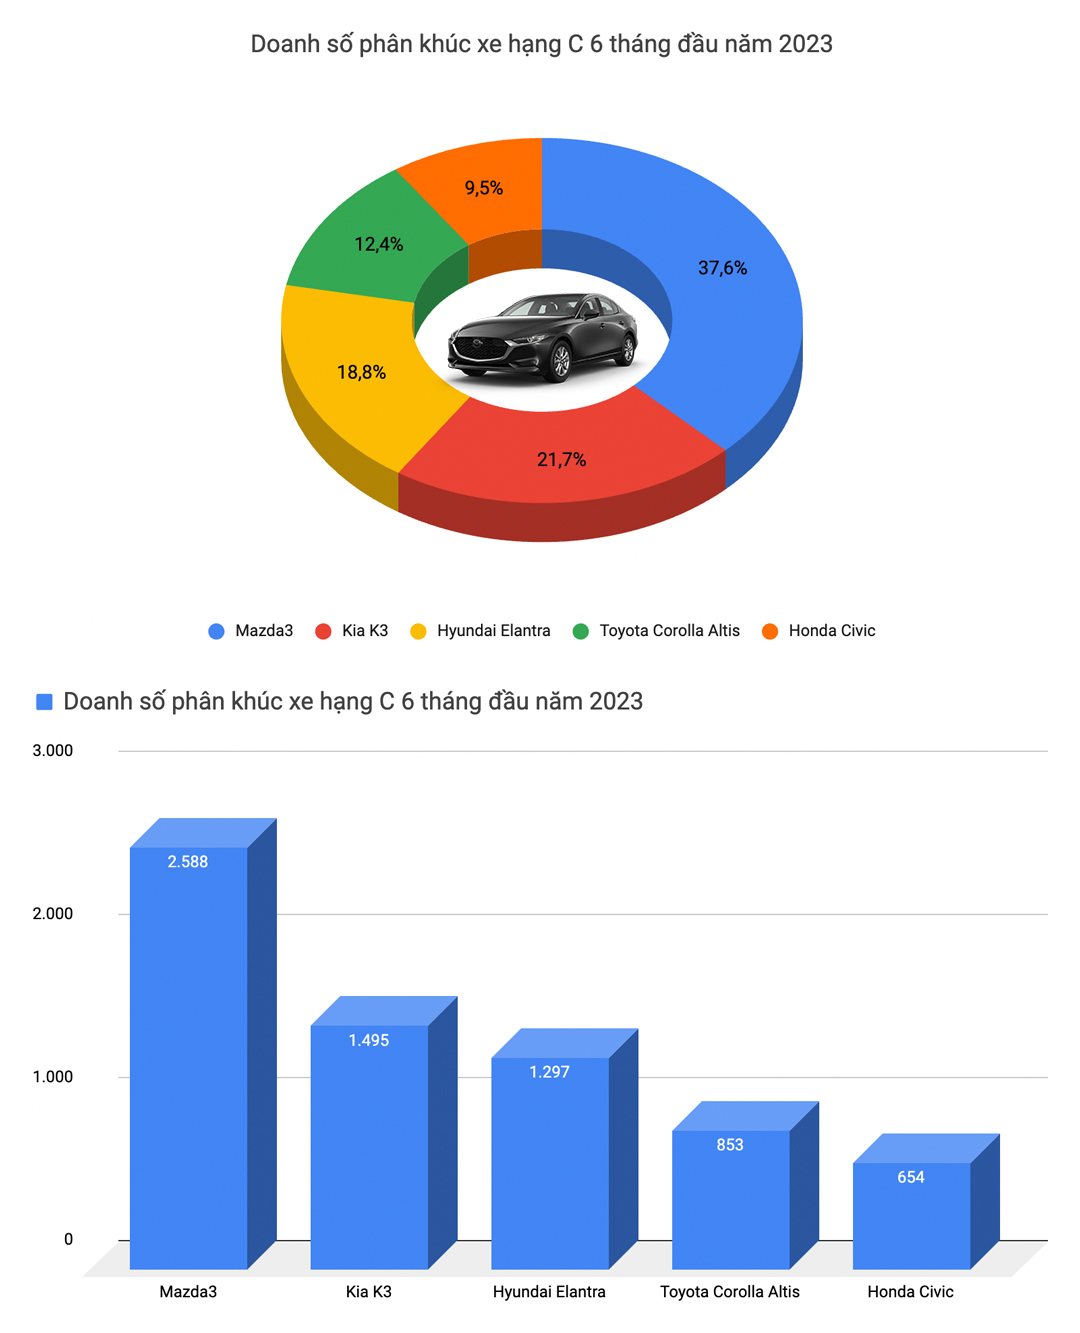 Mitsubishi Xpander bán chạy nhất Việt Nam và 9 ông vua doanh số từng phân khúc nửa đầu 2023 - Ảnh 4.